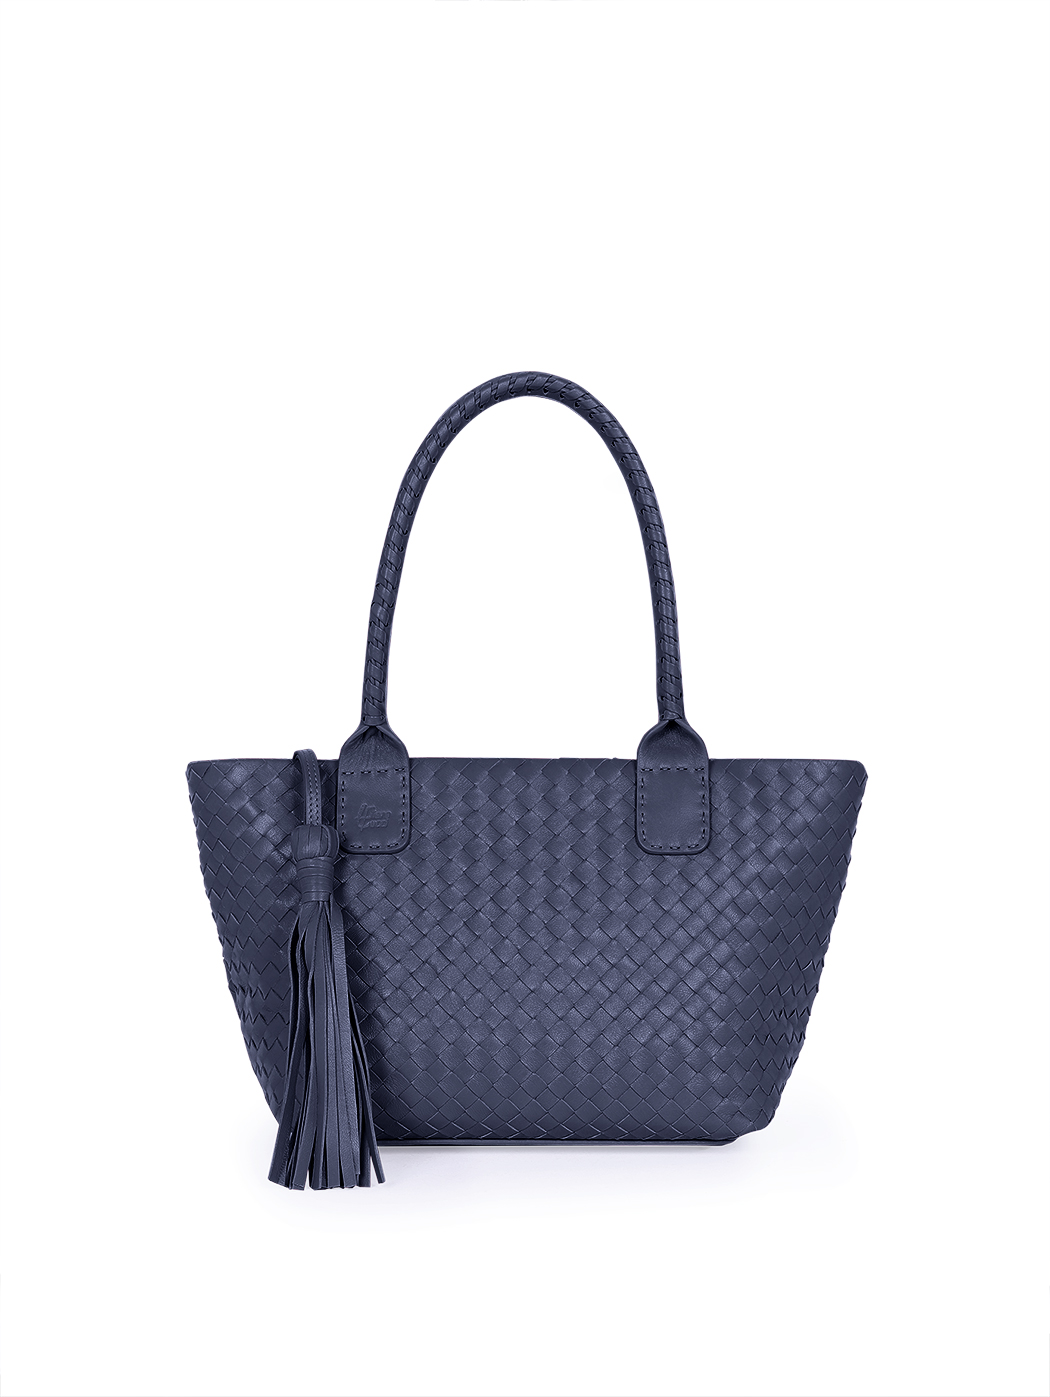 Кожаная плетеная сумка – тоут коллекции Intrecci синего цвета